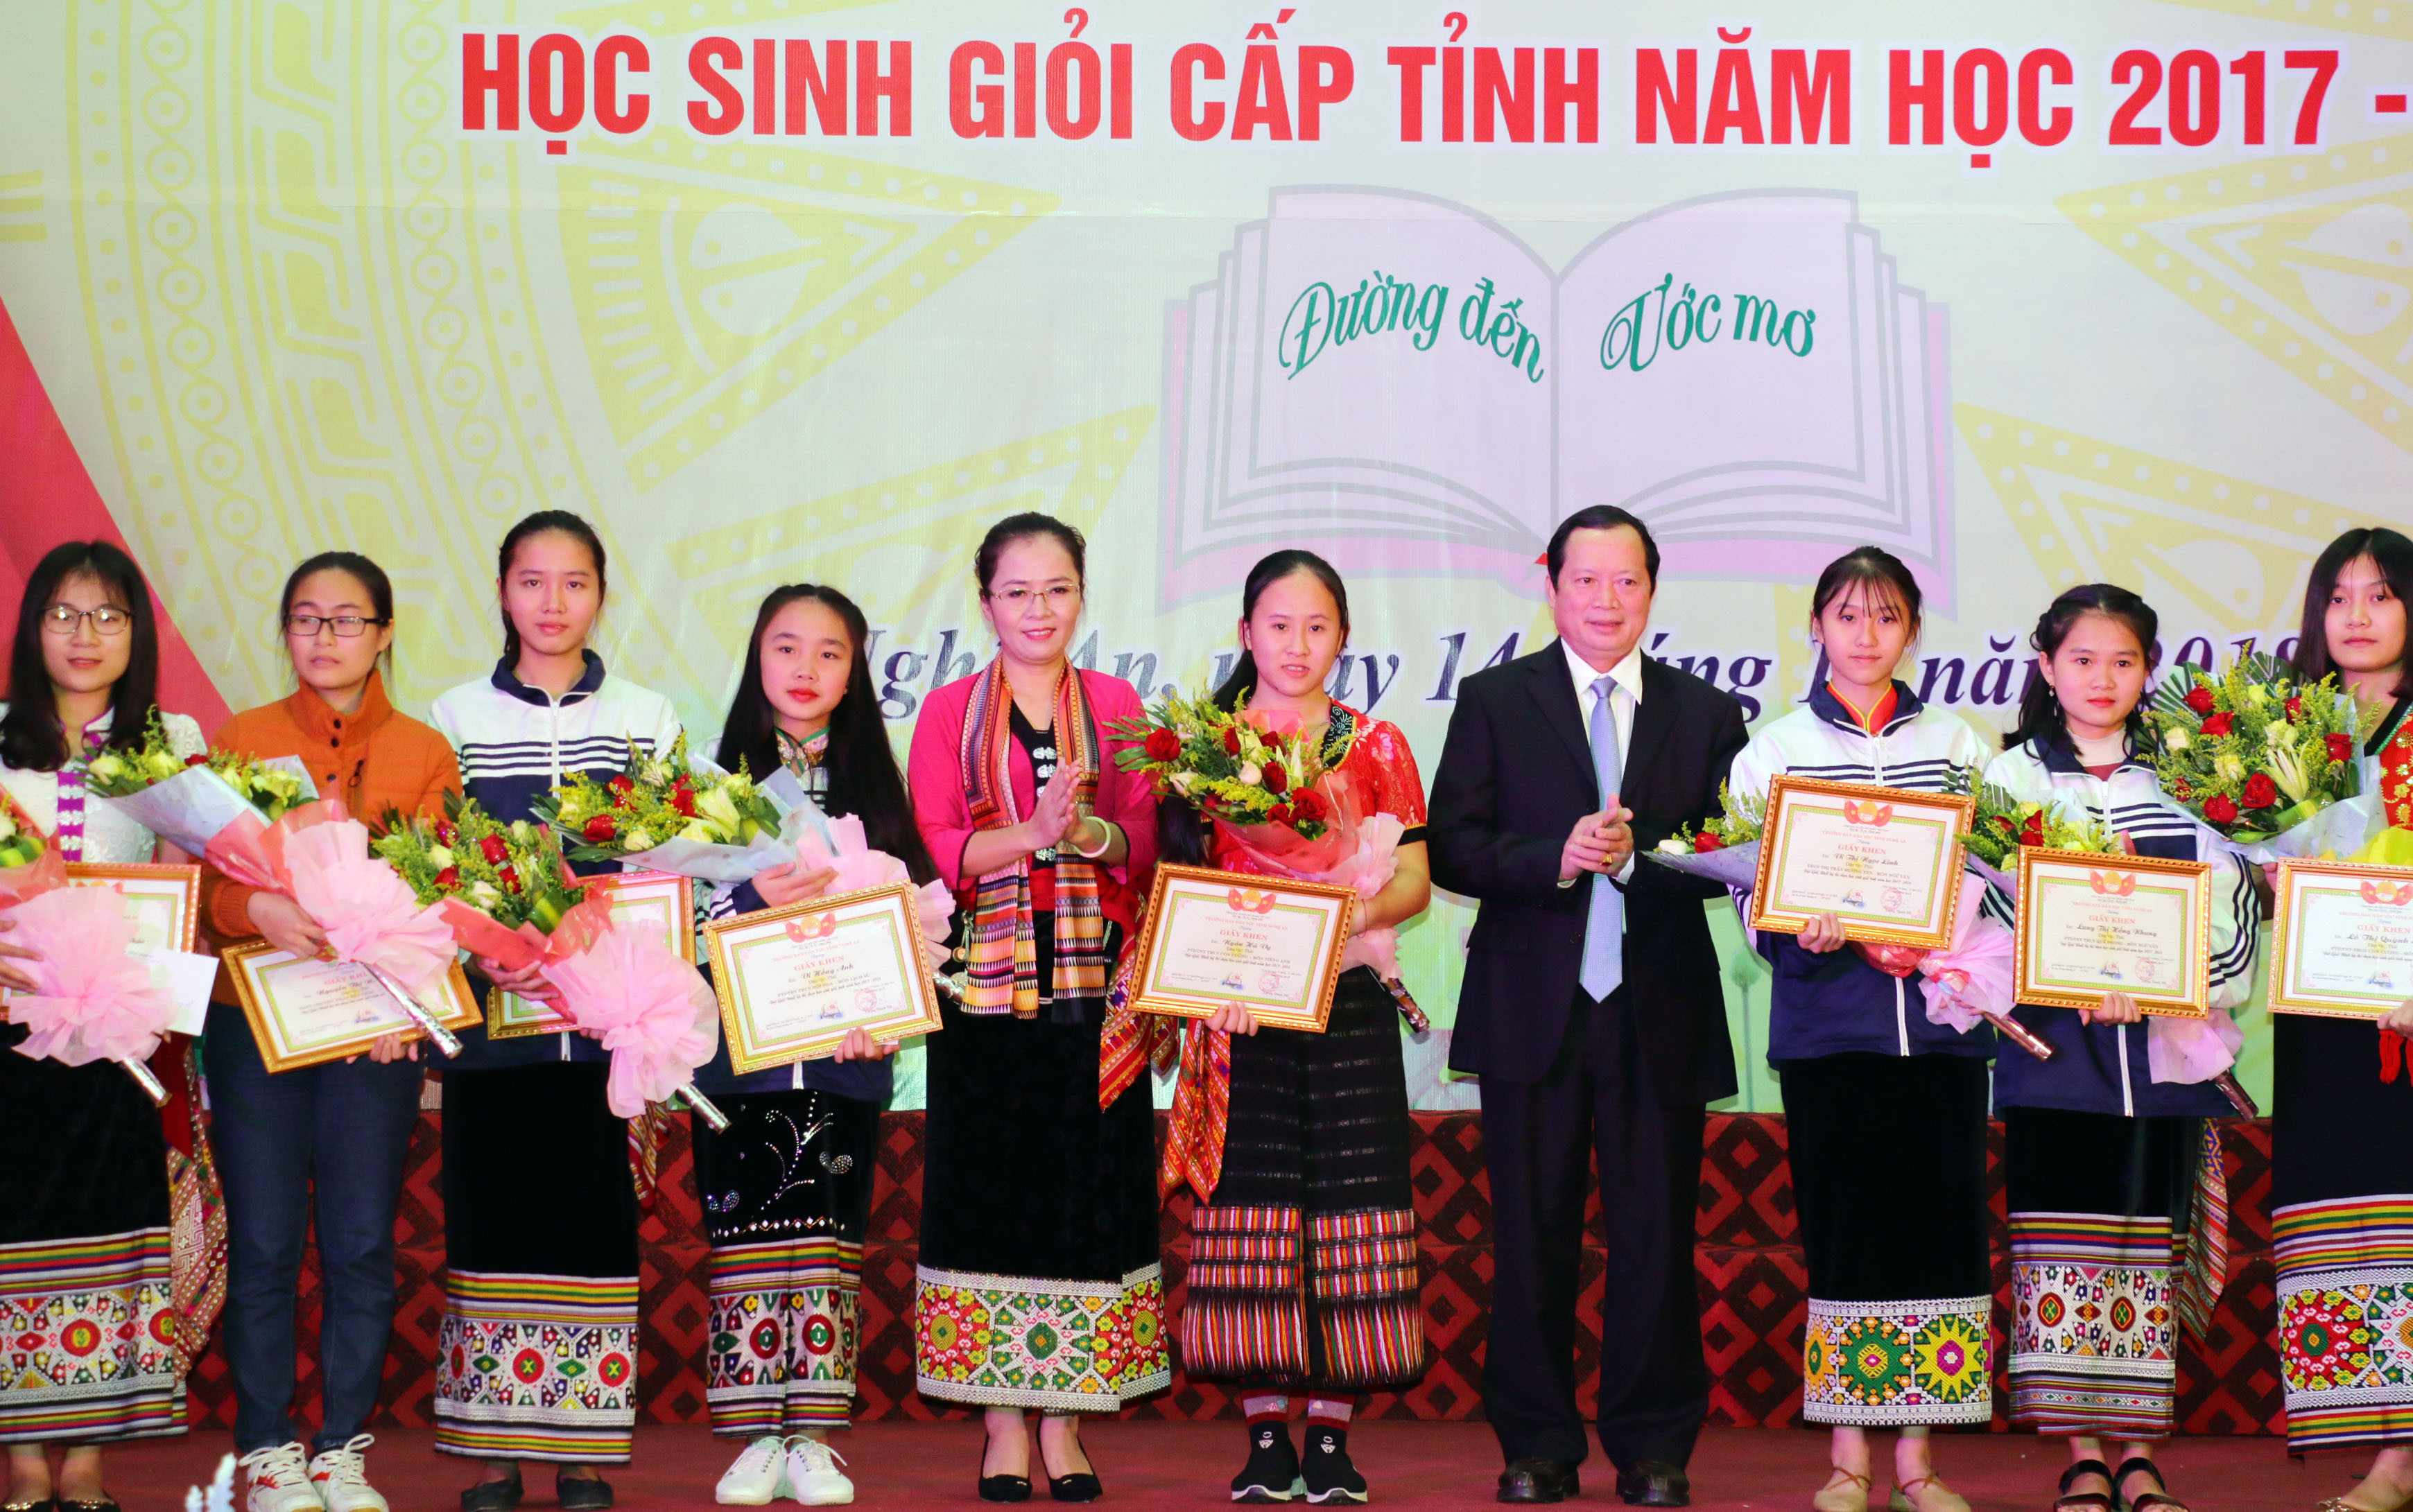 Đồng chí Lương Thanh Hải và Võ Thị Minh Sinh tặng giấy khen và phần thưởng cho những học sinh đạt giải Nhất. Ảnh: Mỹ Hà